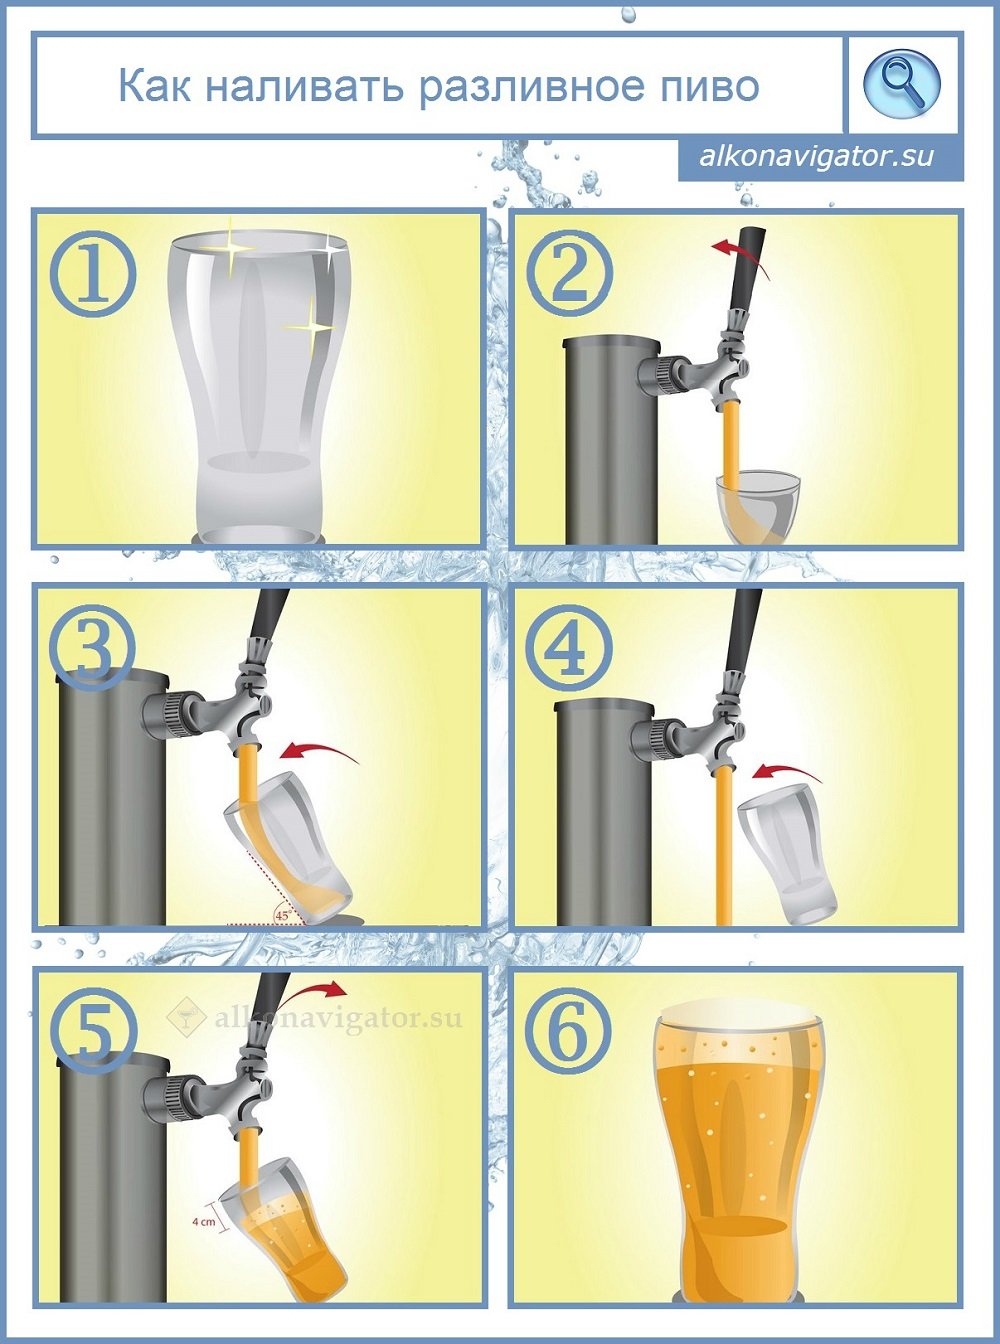 Инструкция: как налить разливное пиво из кега